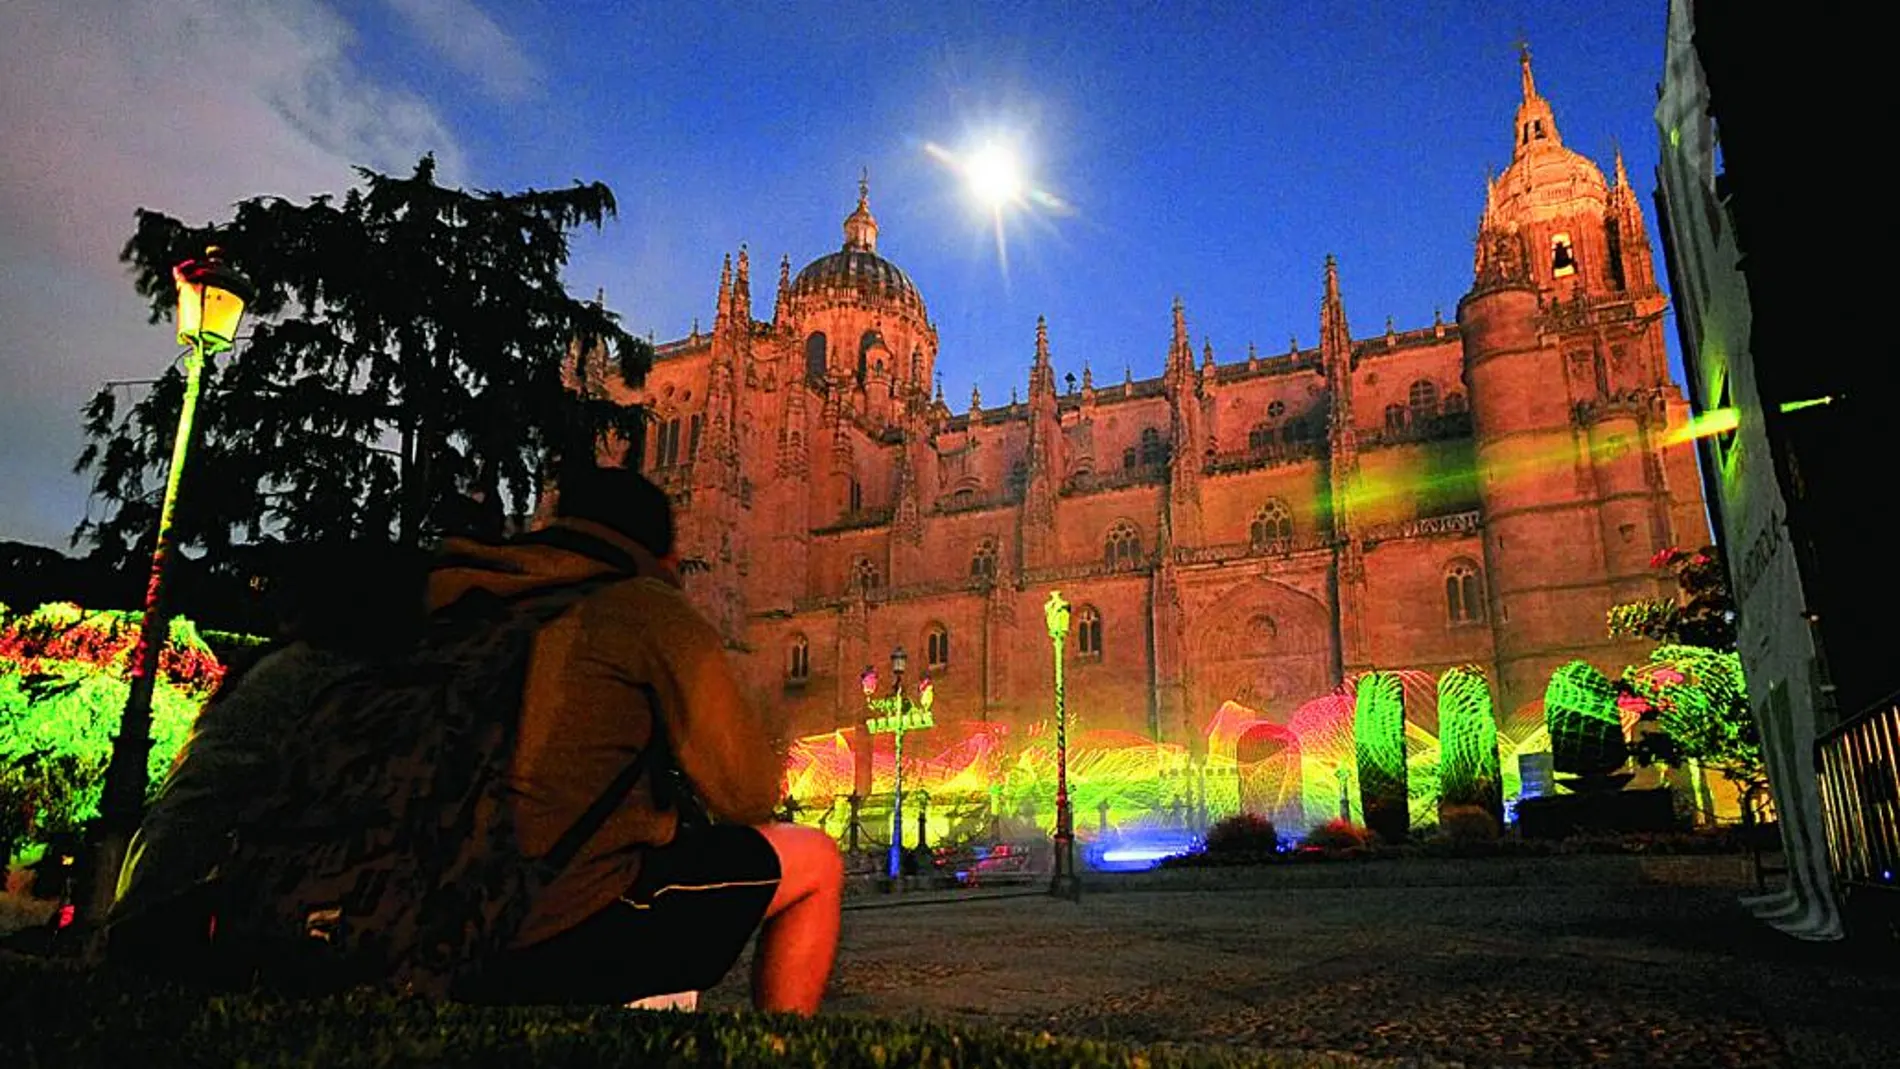 La plaza de Anaya, situada al costado de la Catedral Nueva, albergará la obra de uno de los artistas internacionales invitados durante el festival